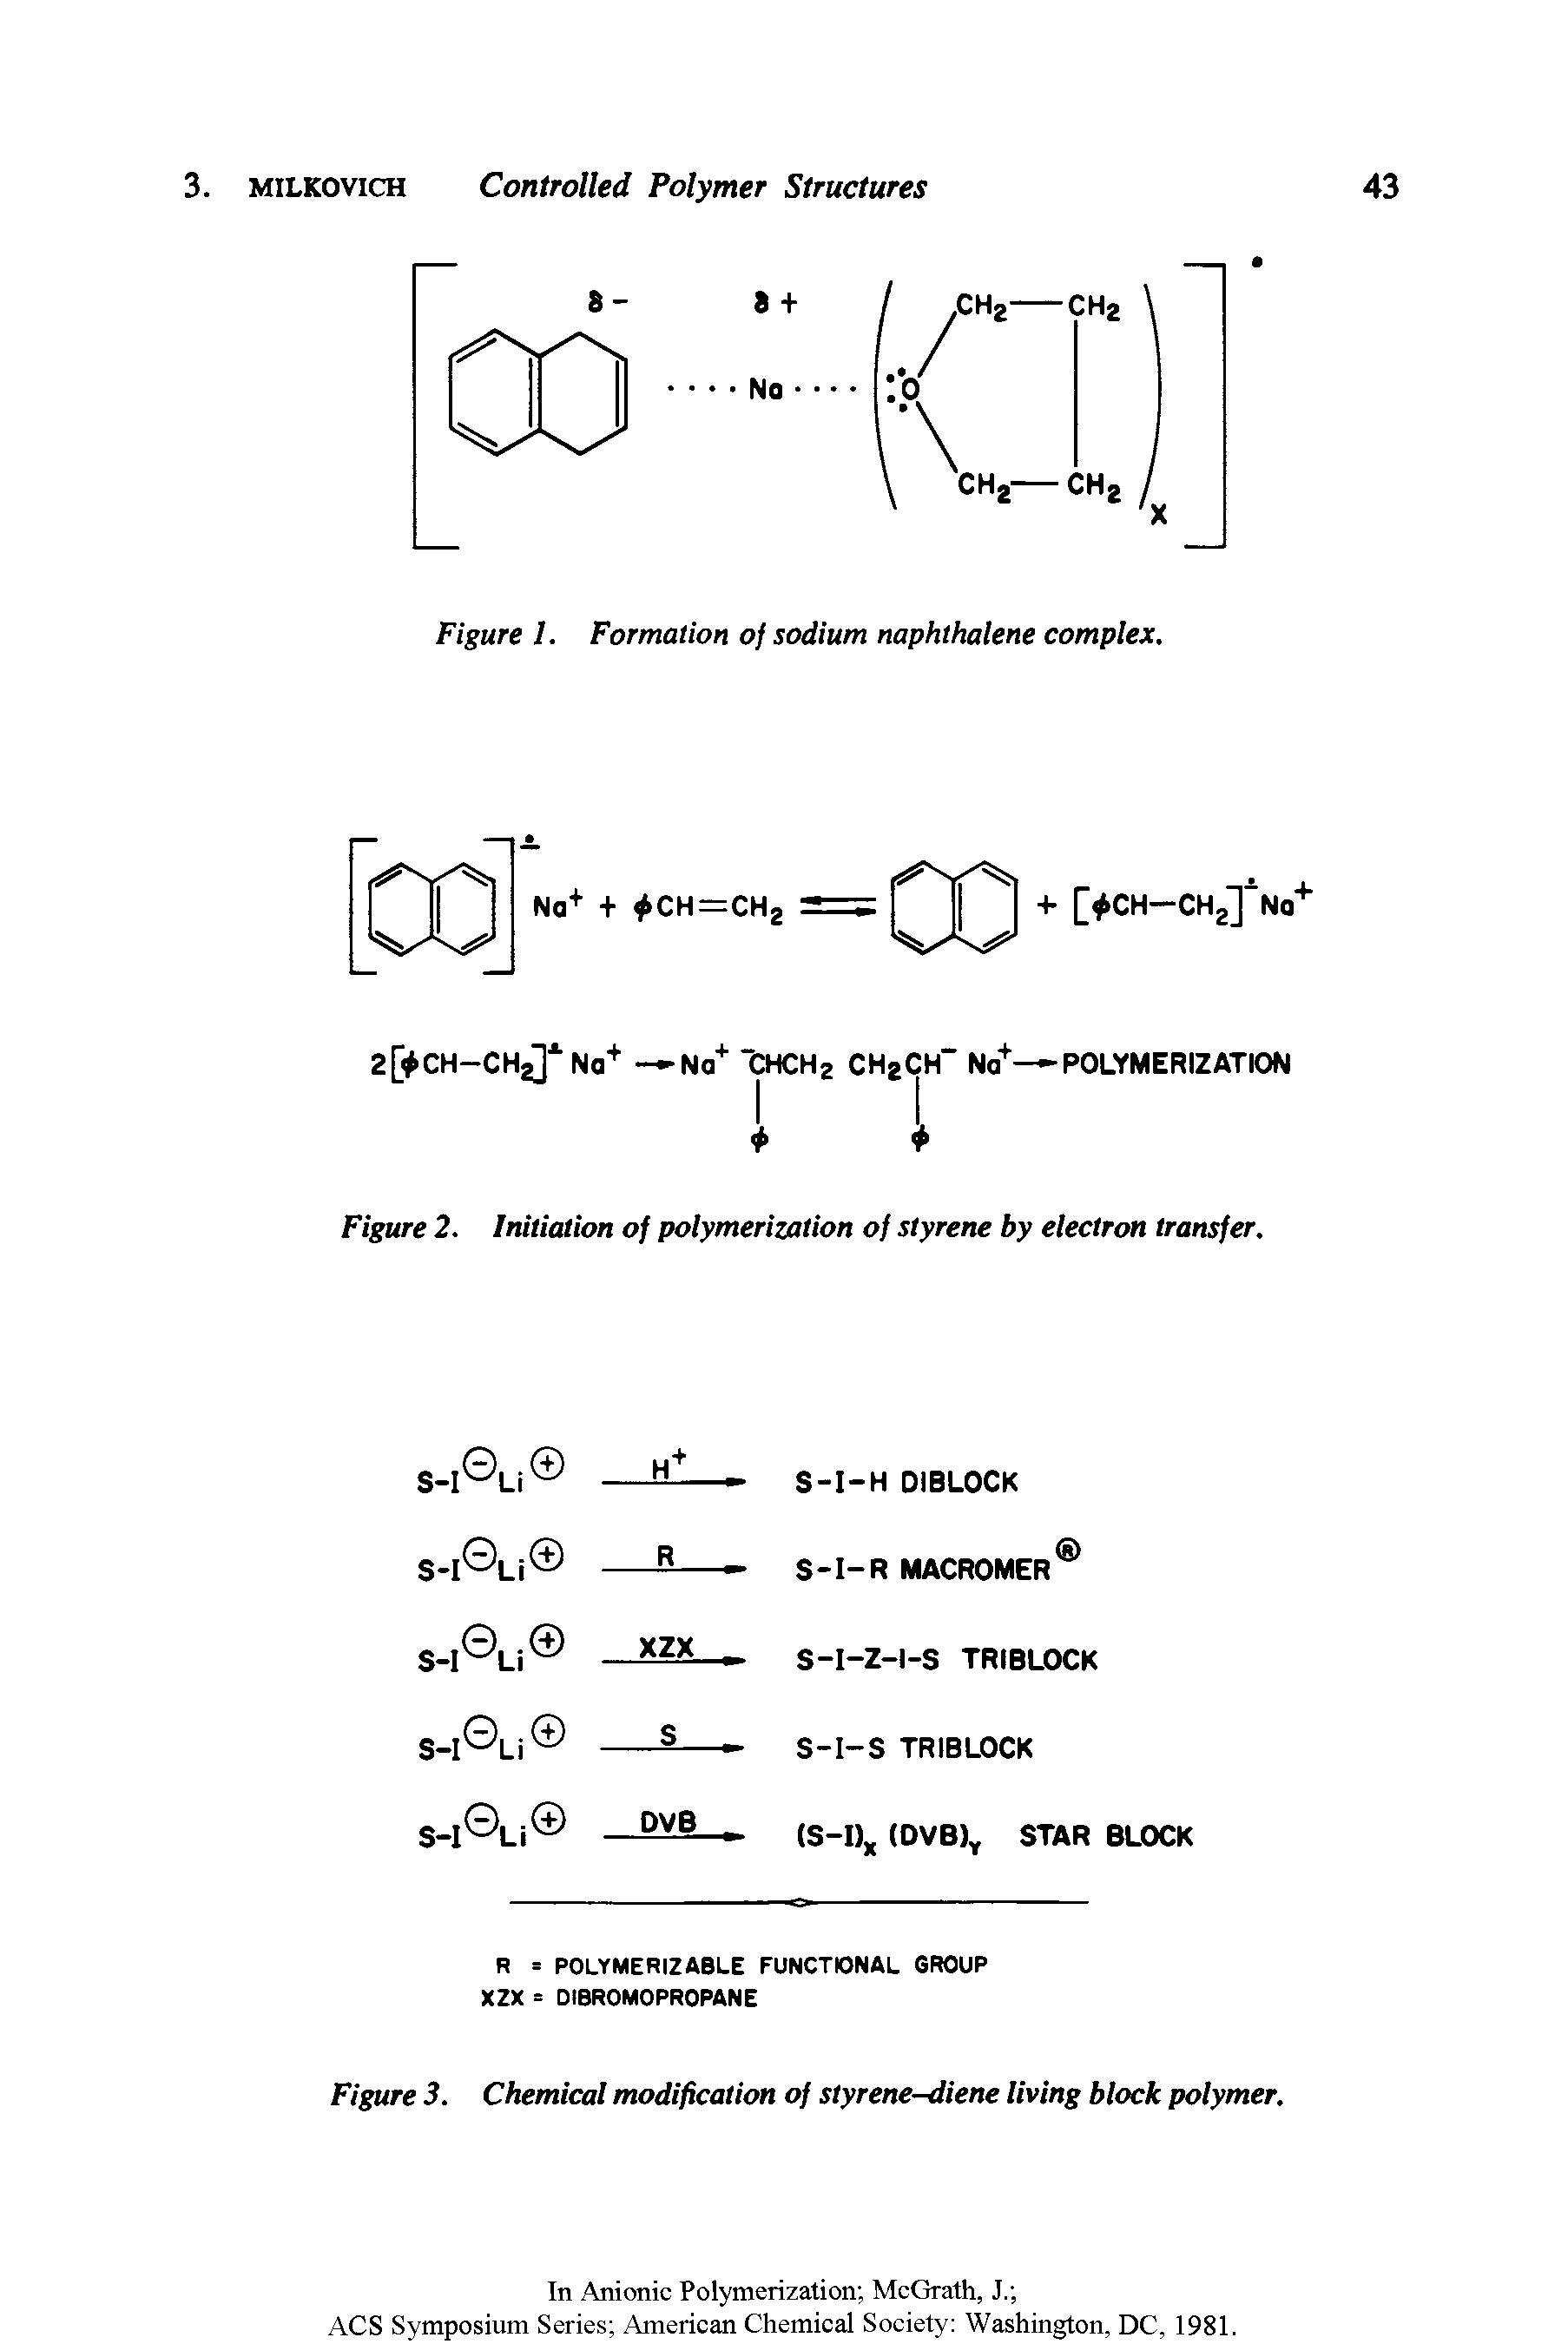 Figure 3. Chemical modification of styrene-diene living block polymer.